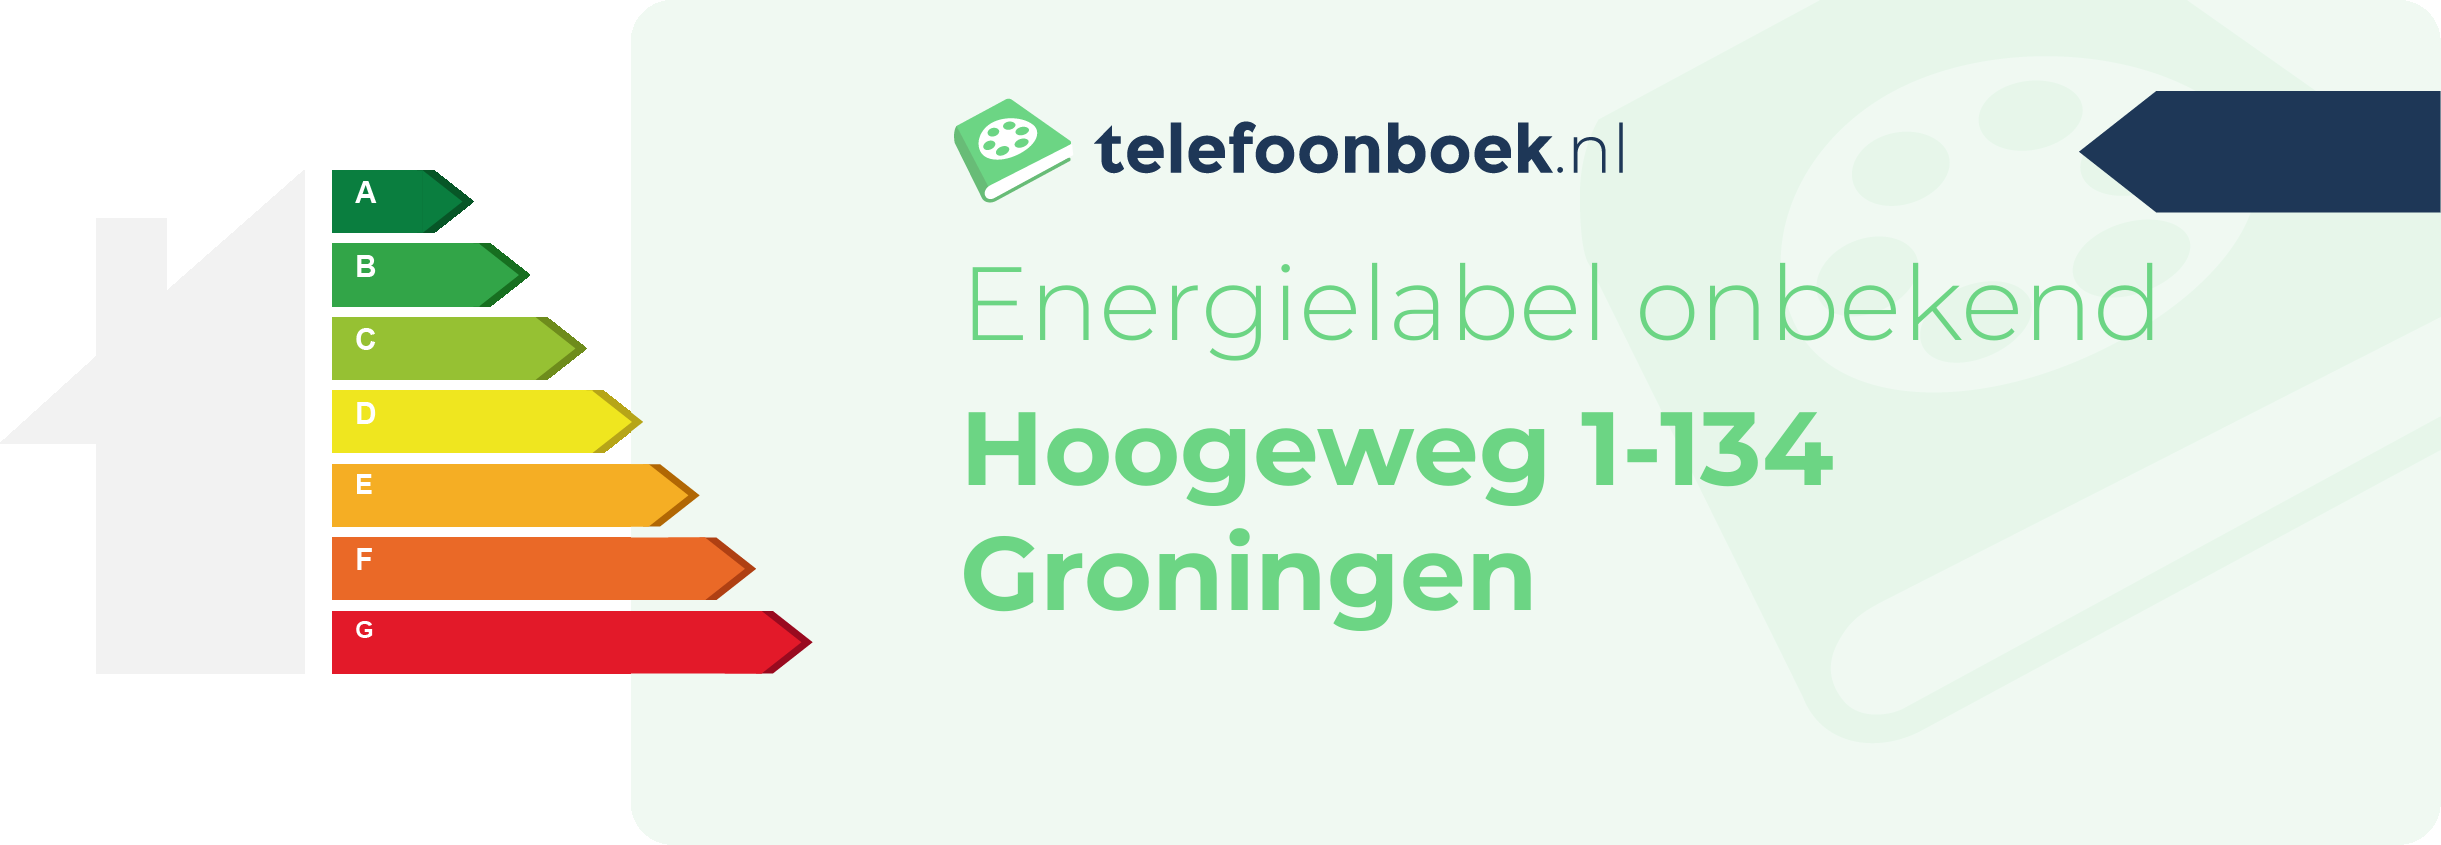 Energielabel Hoogeweg 1-134 Groningen